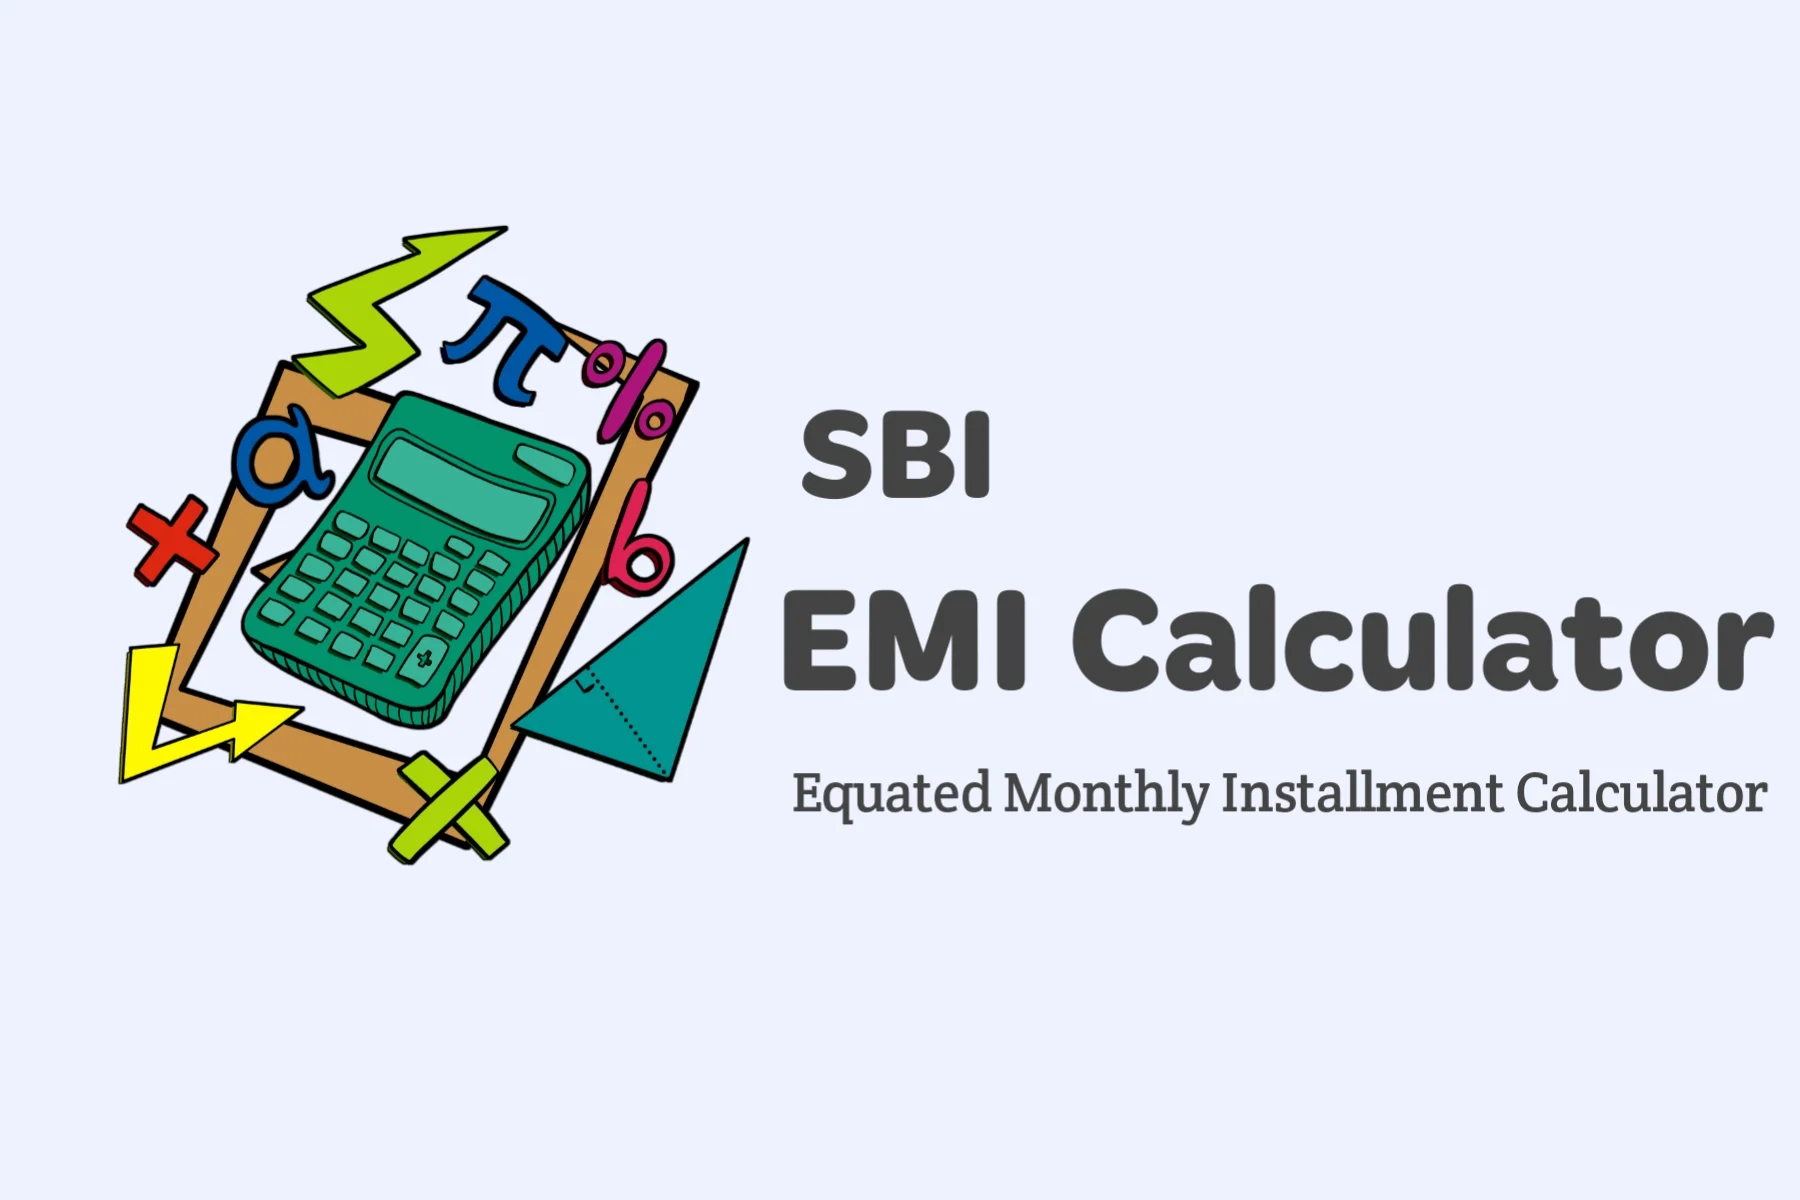 SBI EMI Calculator